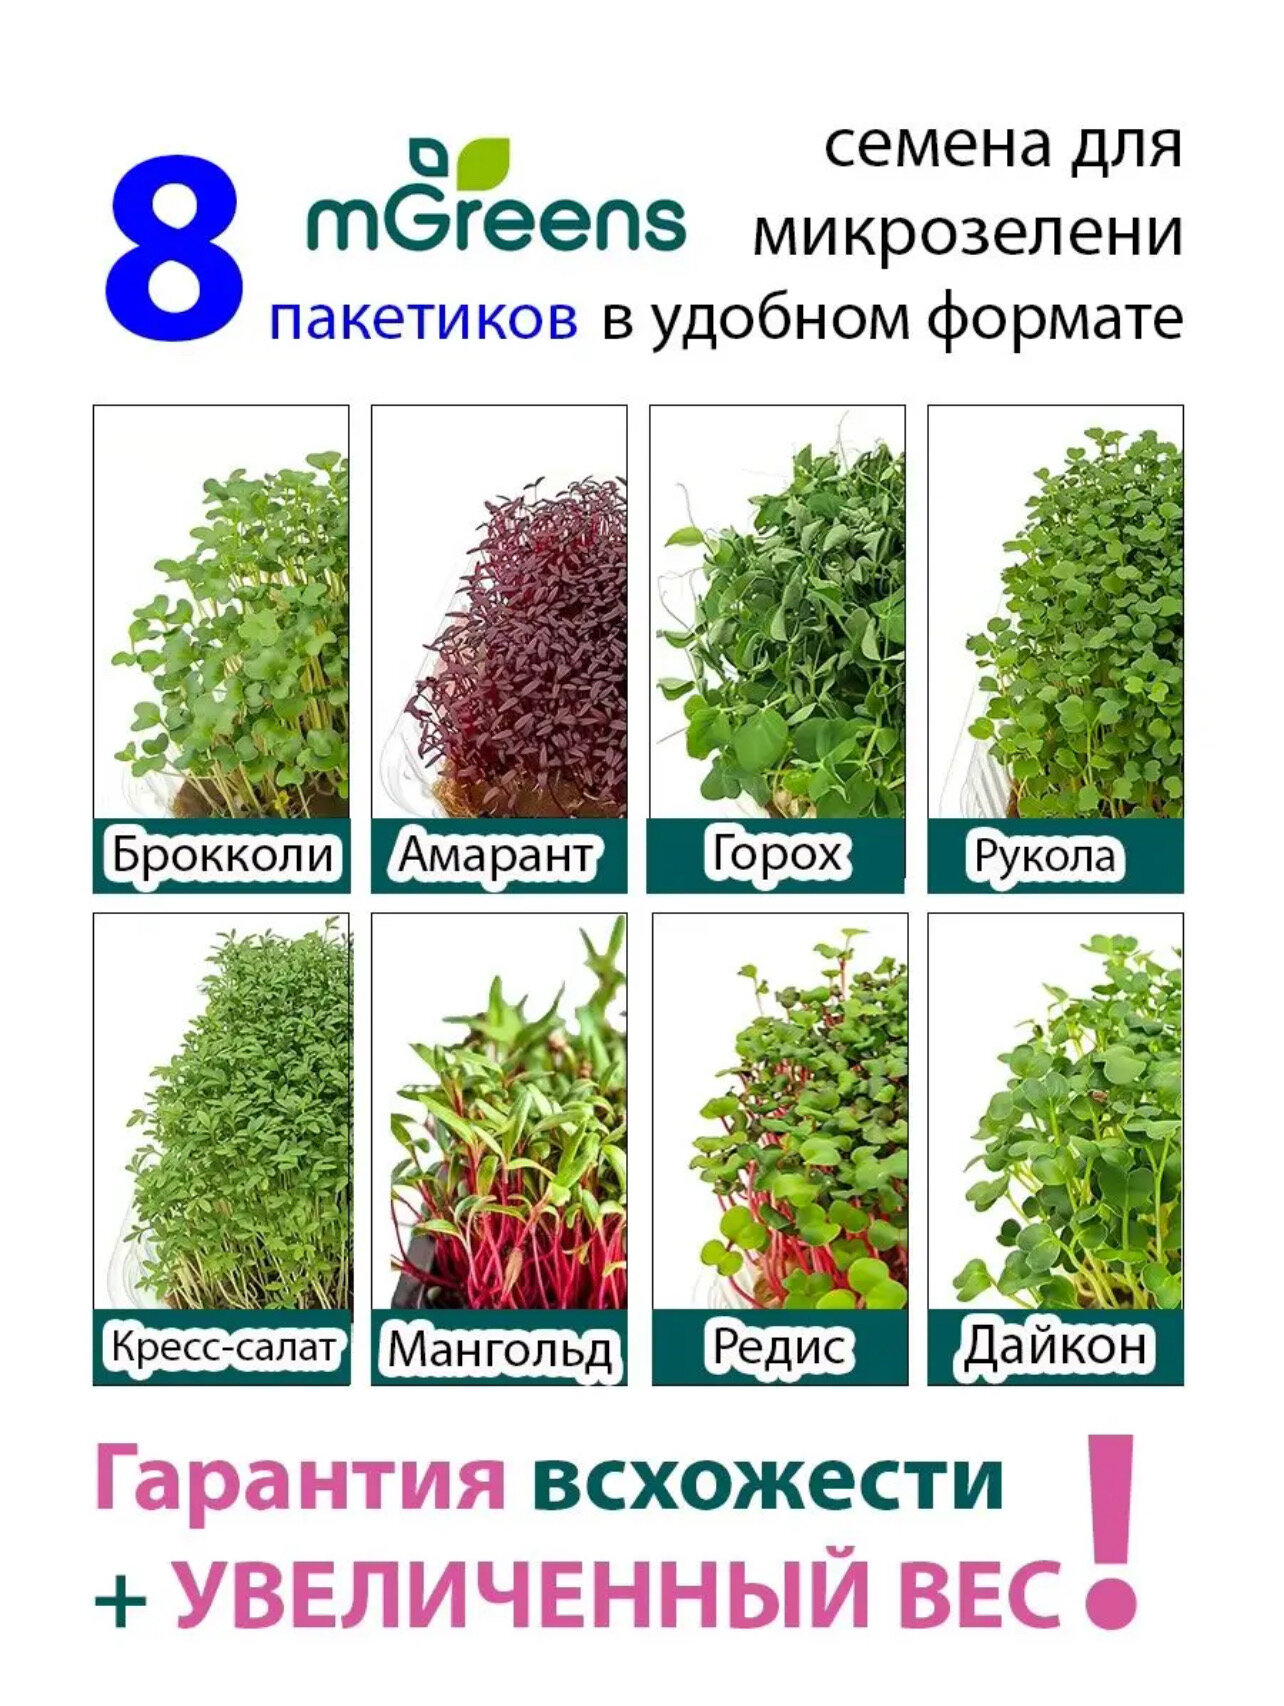 Ассорти №1 семена микрозелени 8 видов